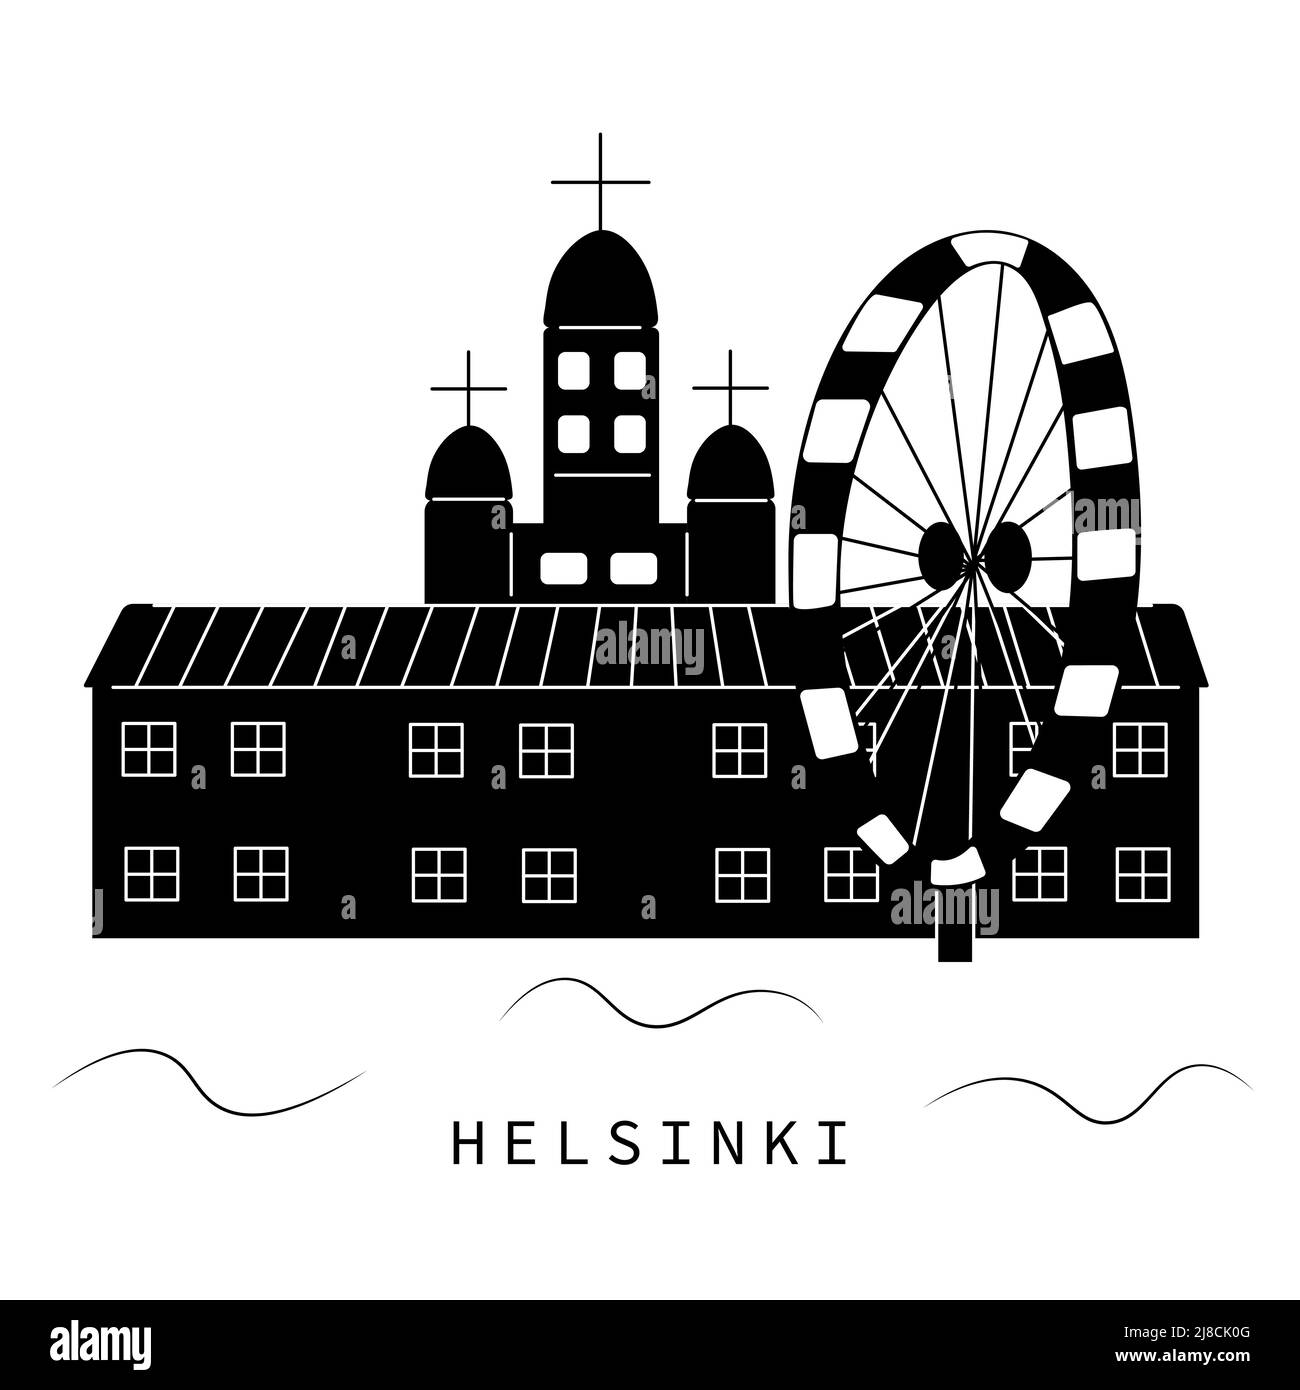 Helsinki, black and white illustration Stock Vector